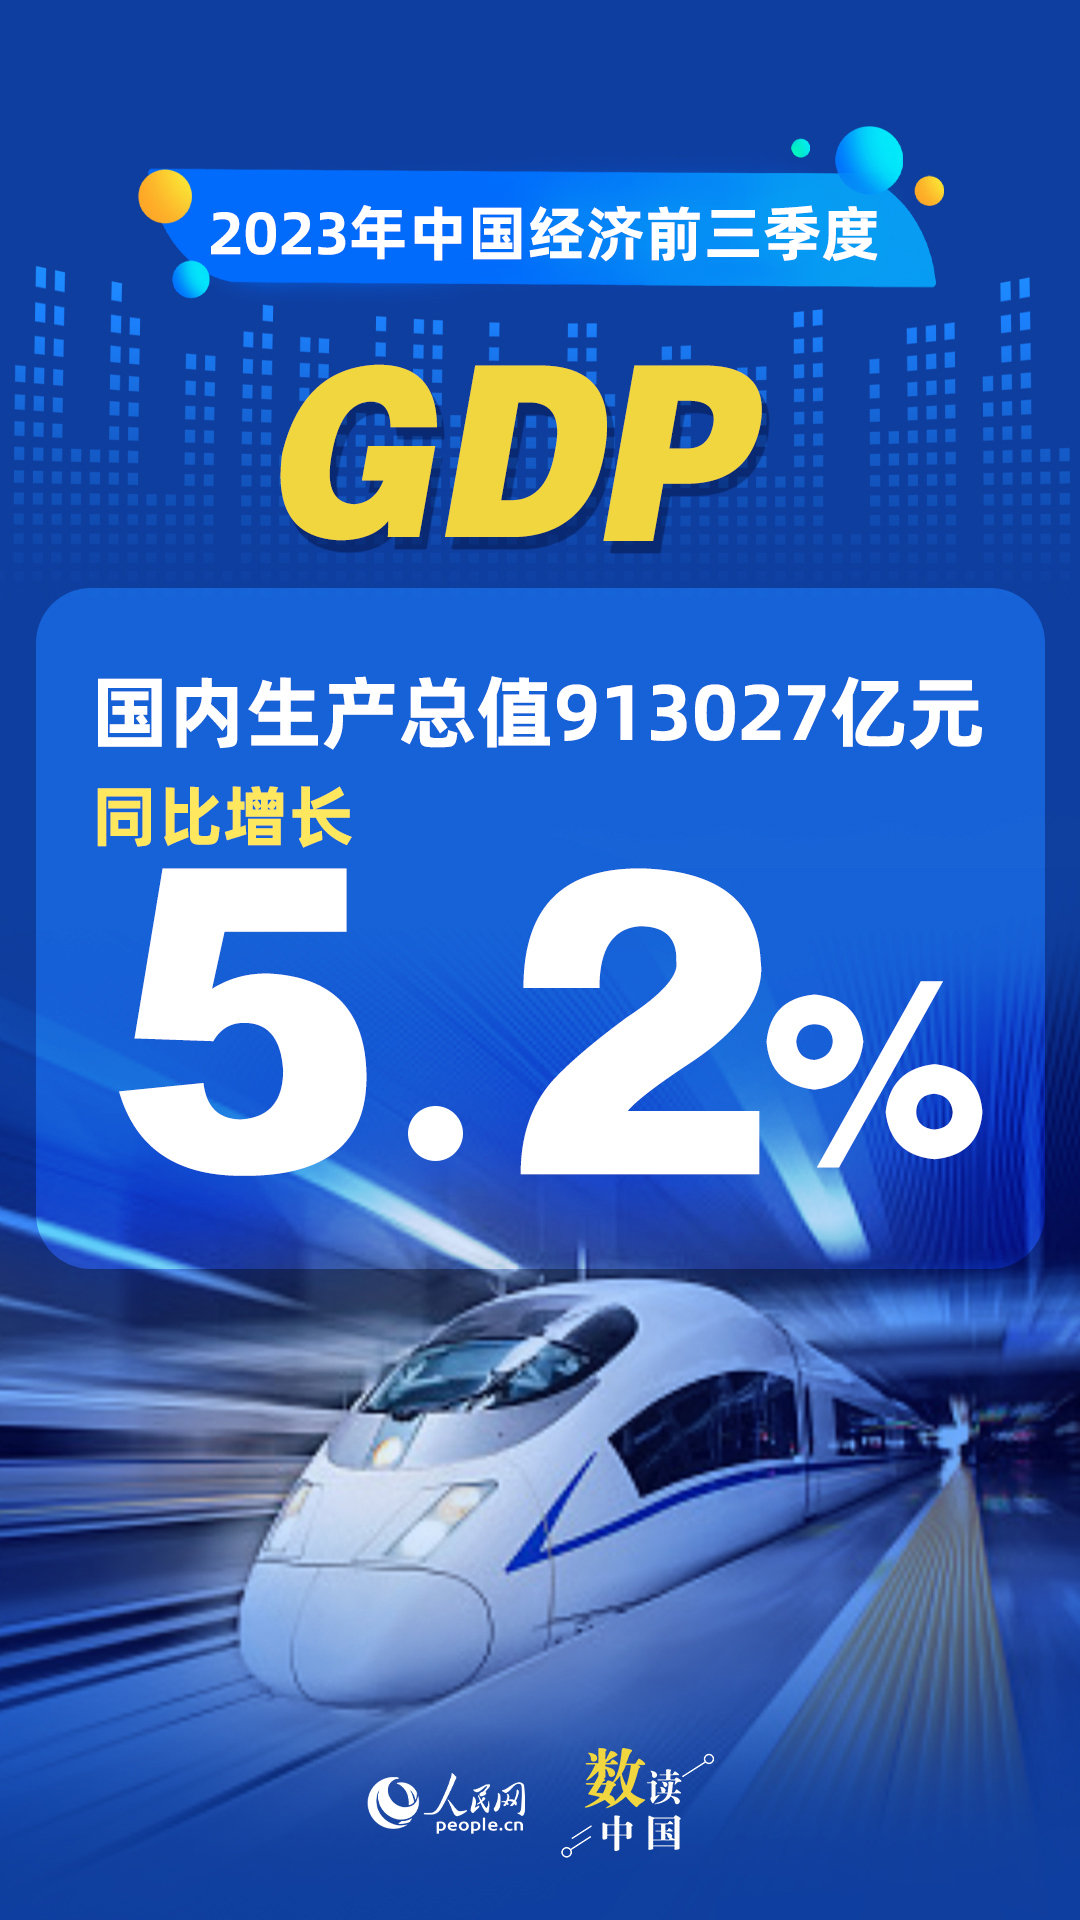 恒耀：数读中国 | 前三季度国民经济持续恢复向好 积极因素累积增多